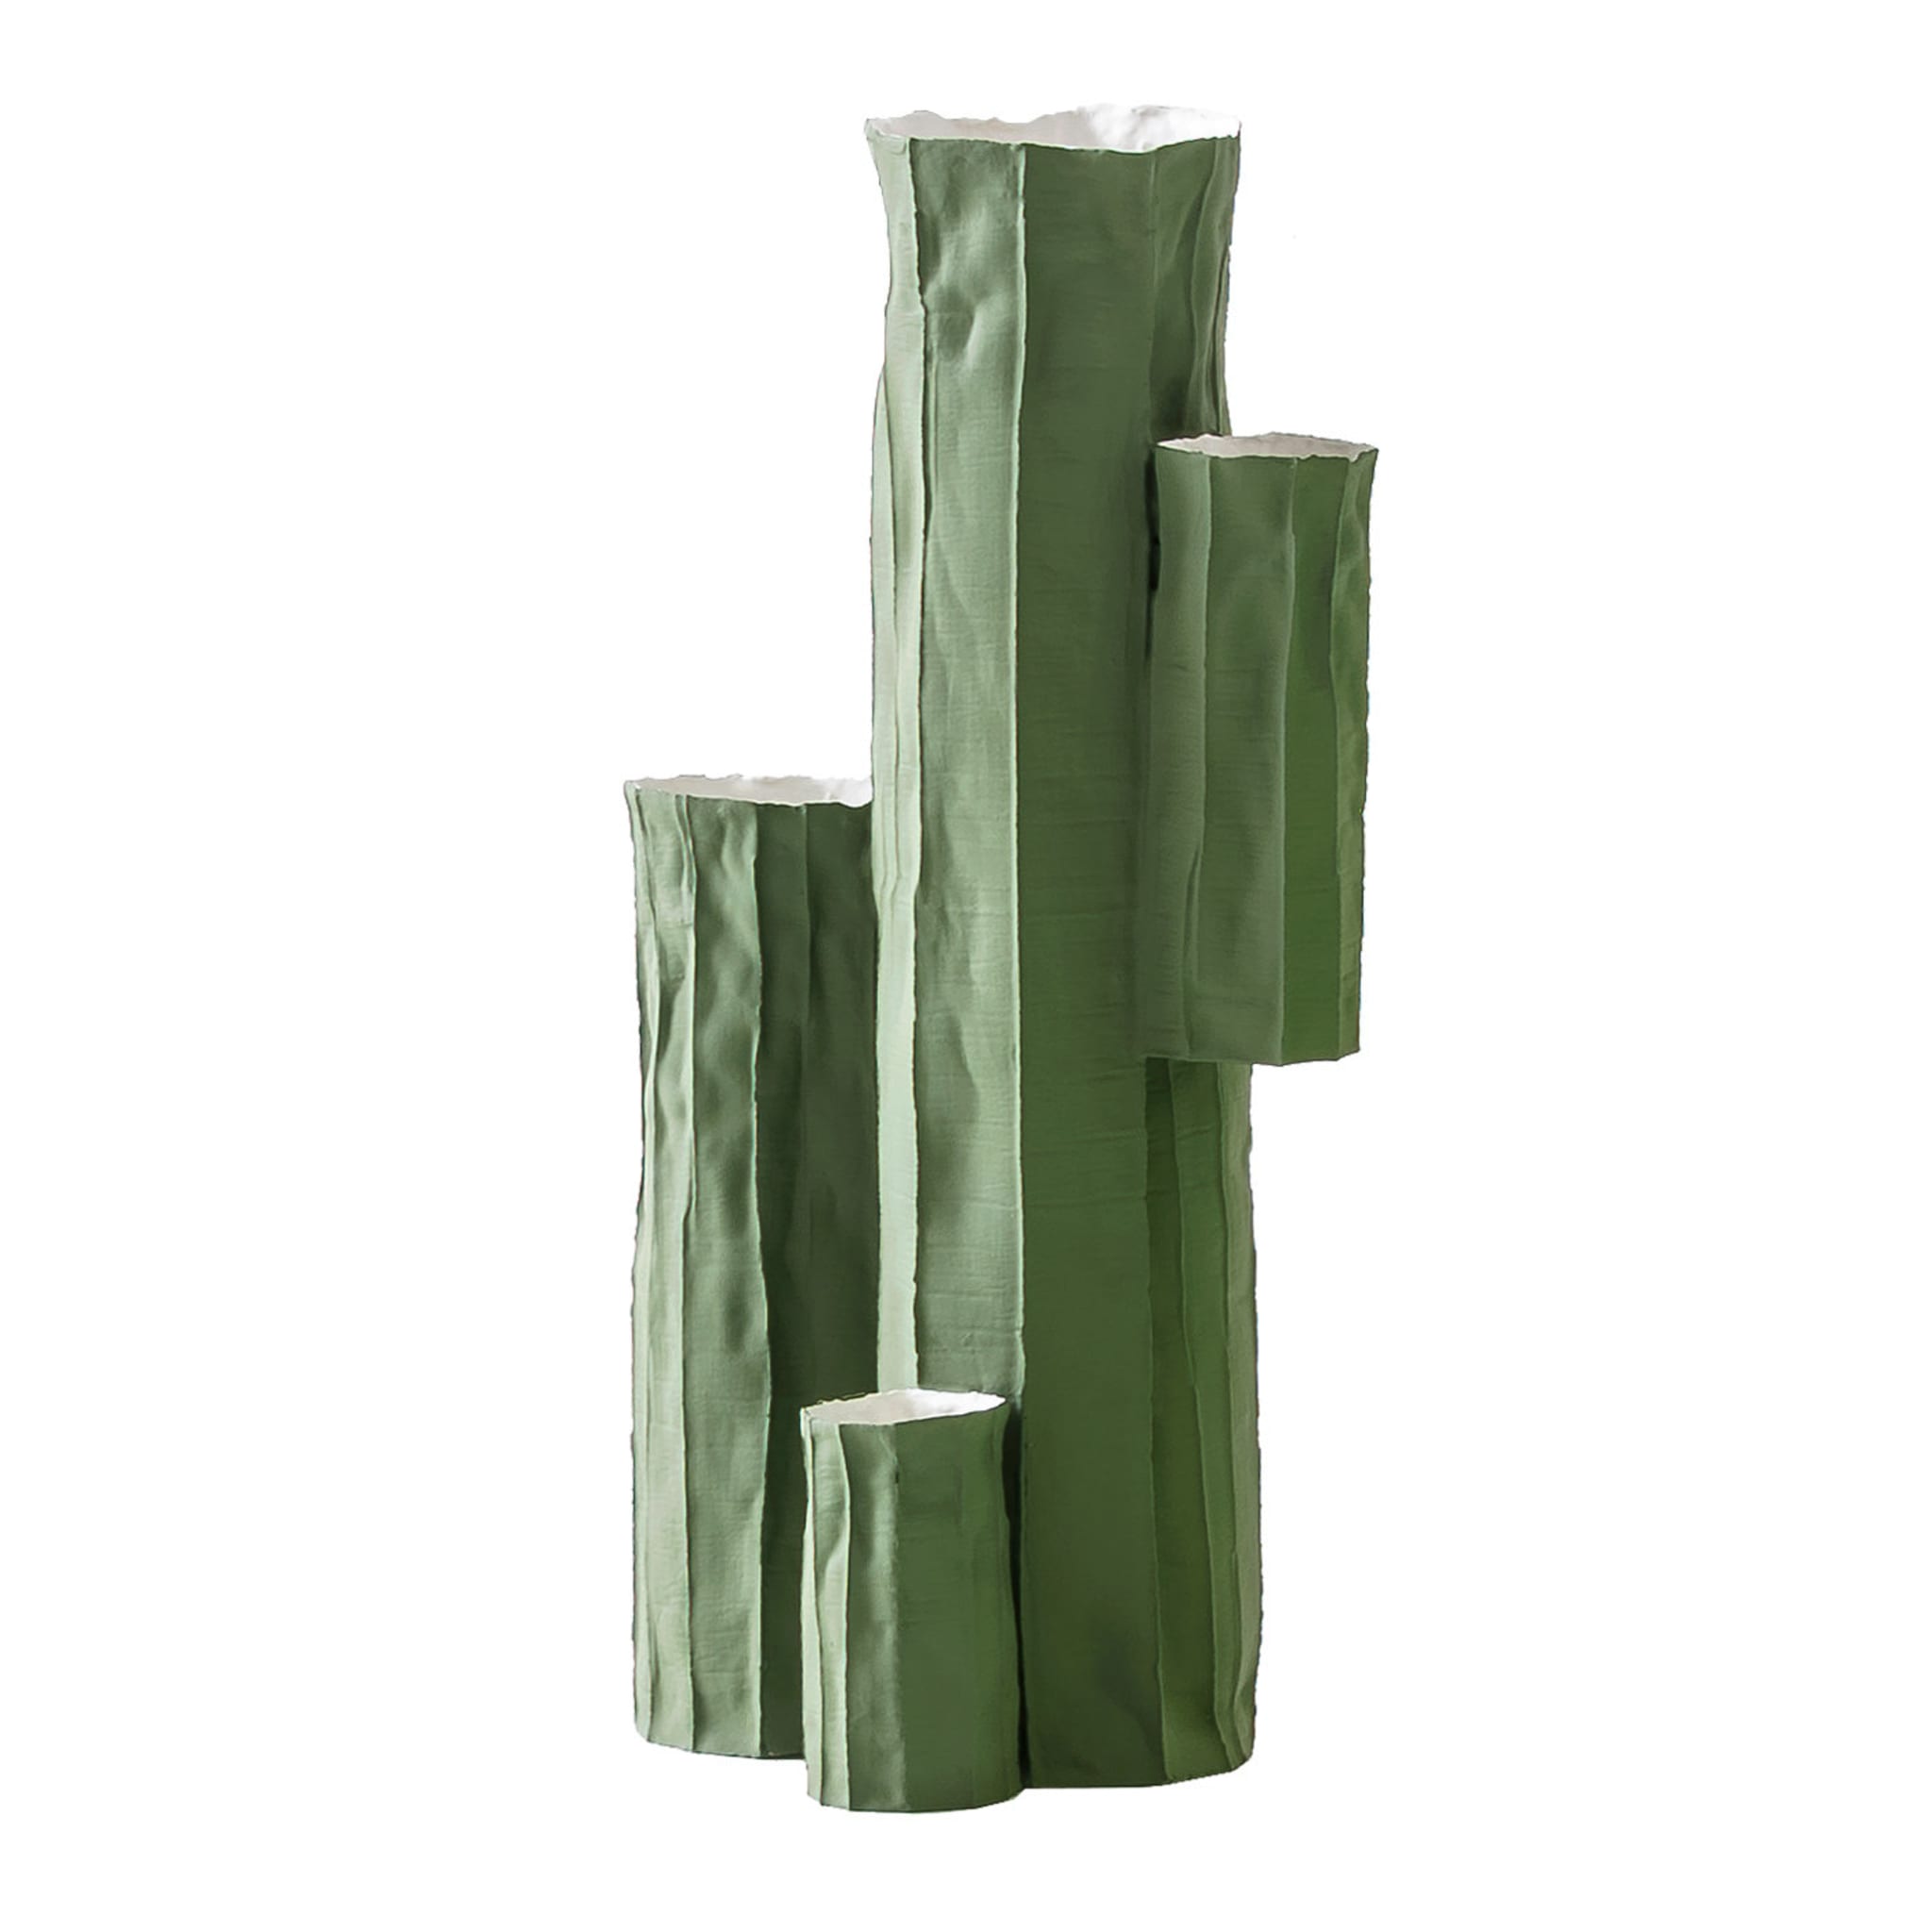 Vase en forme de cactus #1 - Vue principale